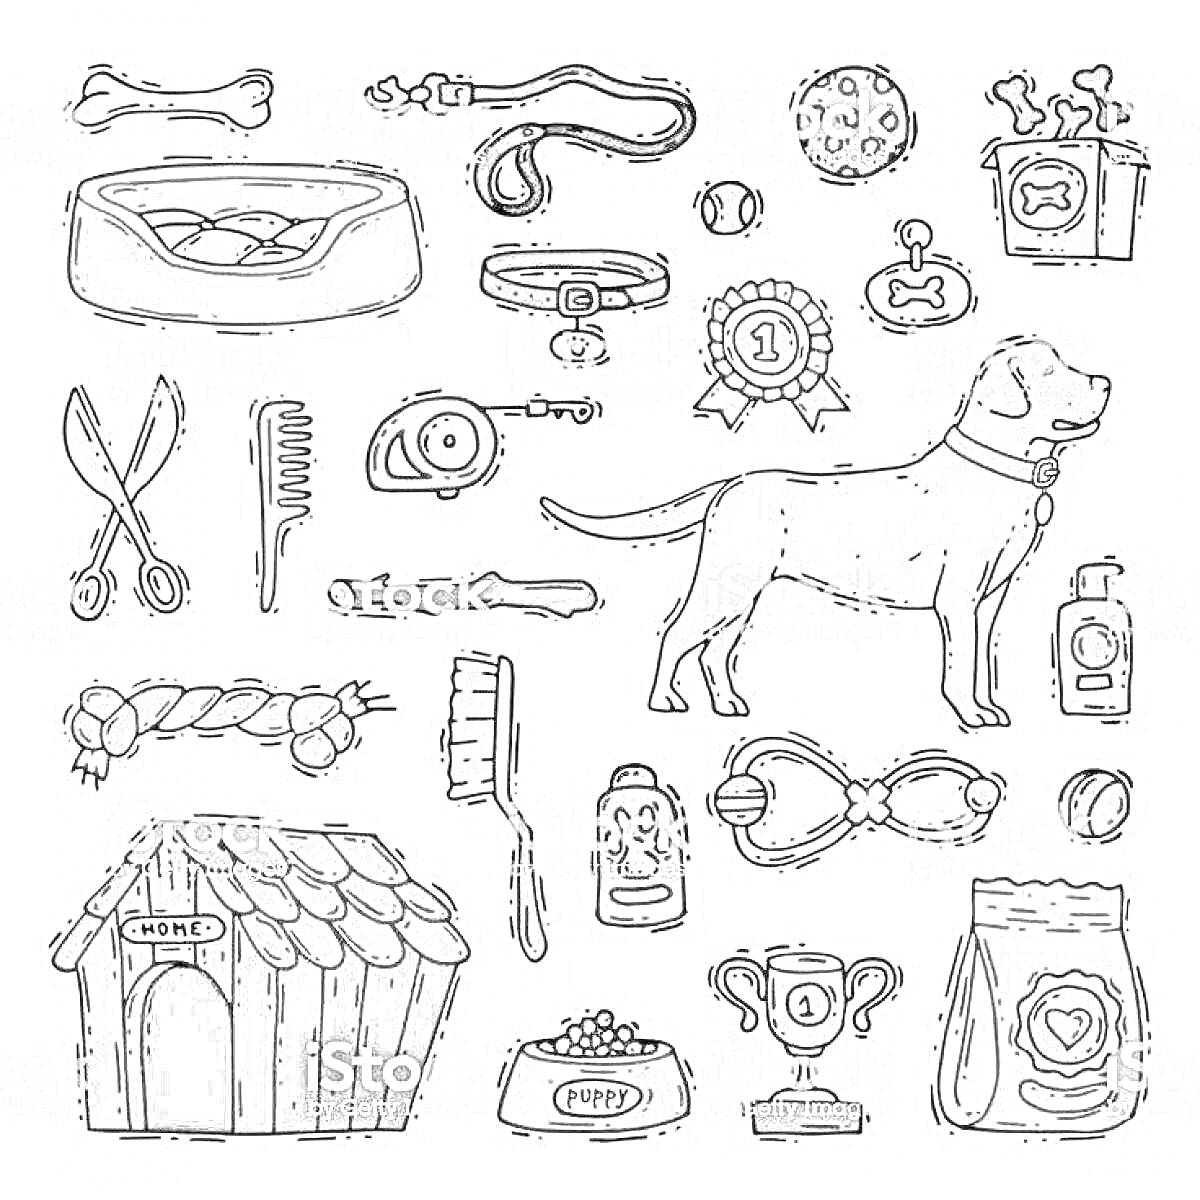 Раскраска Собака в ошейнике и аксессуары (будка, миска с едой, игрушки, шампунь, расческа, поводок, награды, корм)